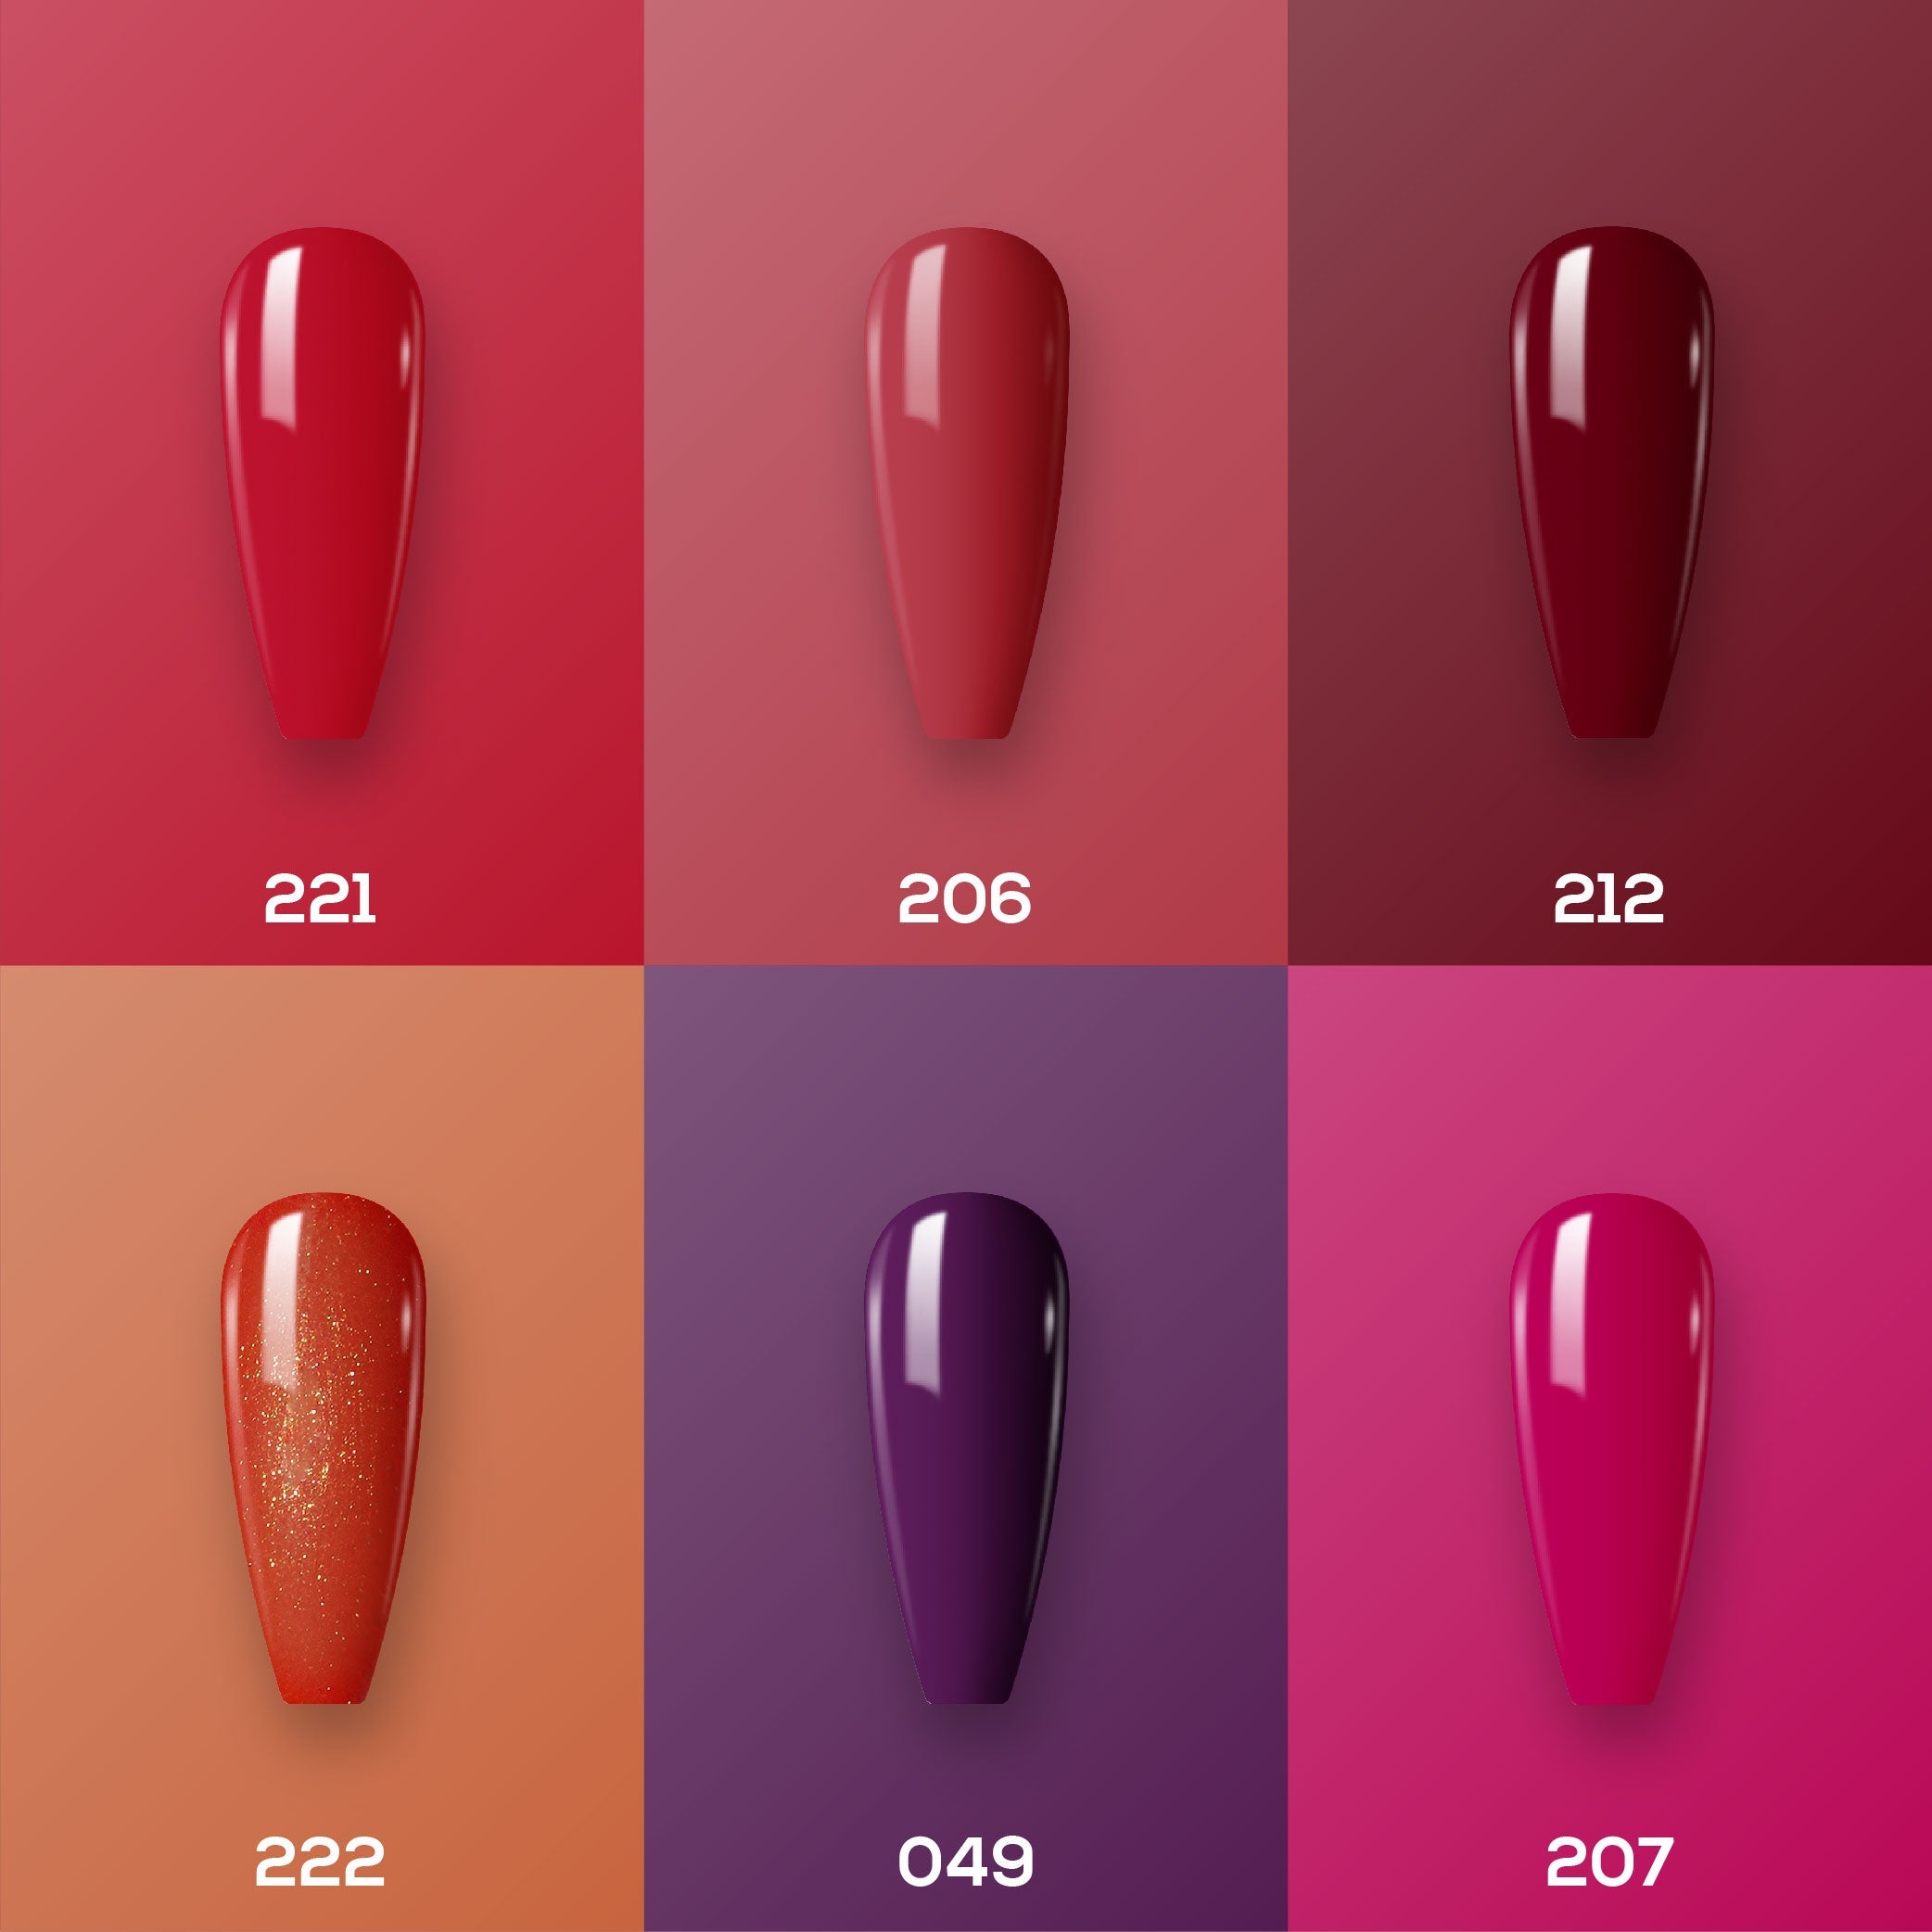 Lavis Healthy Nail Lacquer Set N8 (6 colors): 221, 206, 212, 222, 049, 207